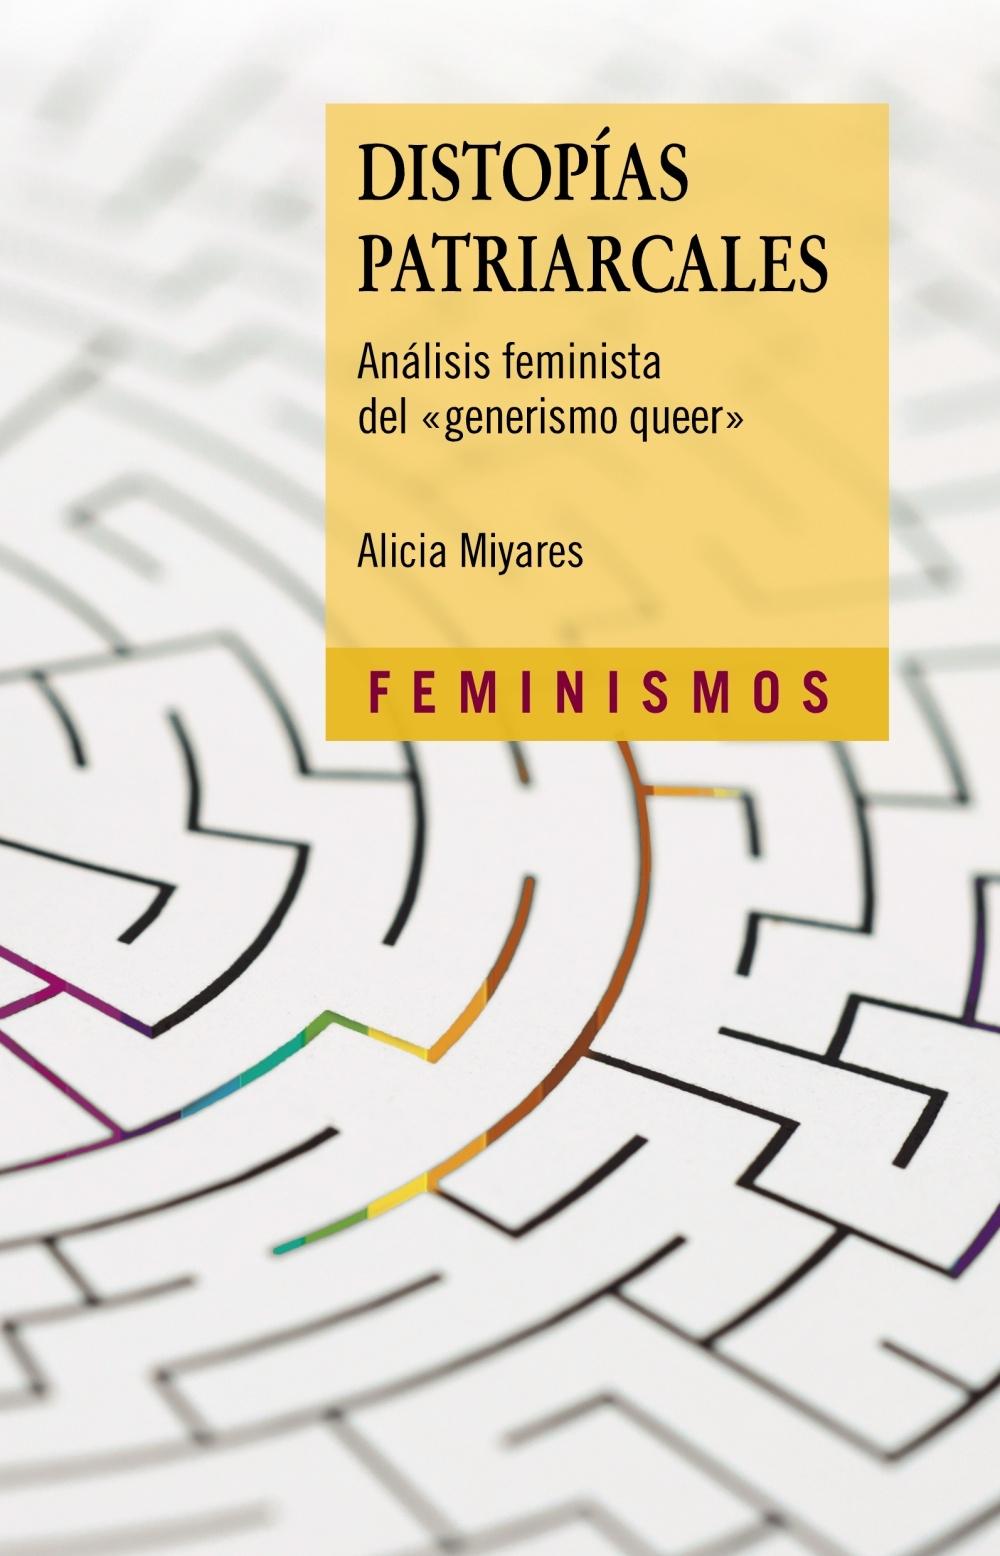 Distopías patriarcales "Análisis feminista del 'generismo queer'"